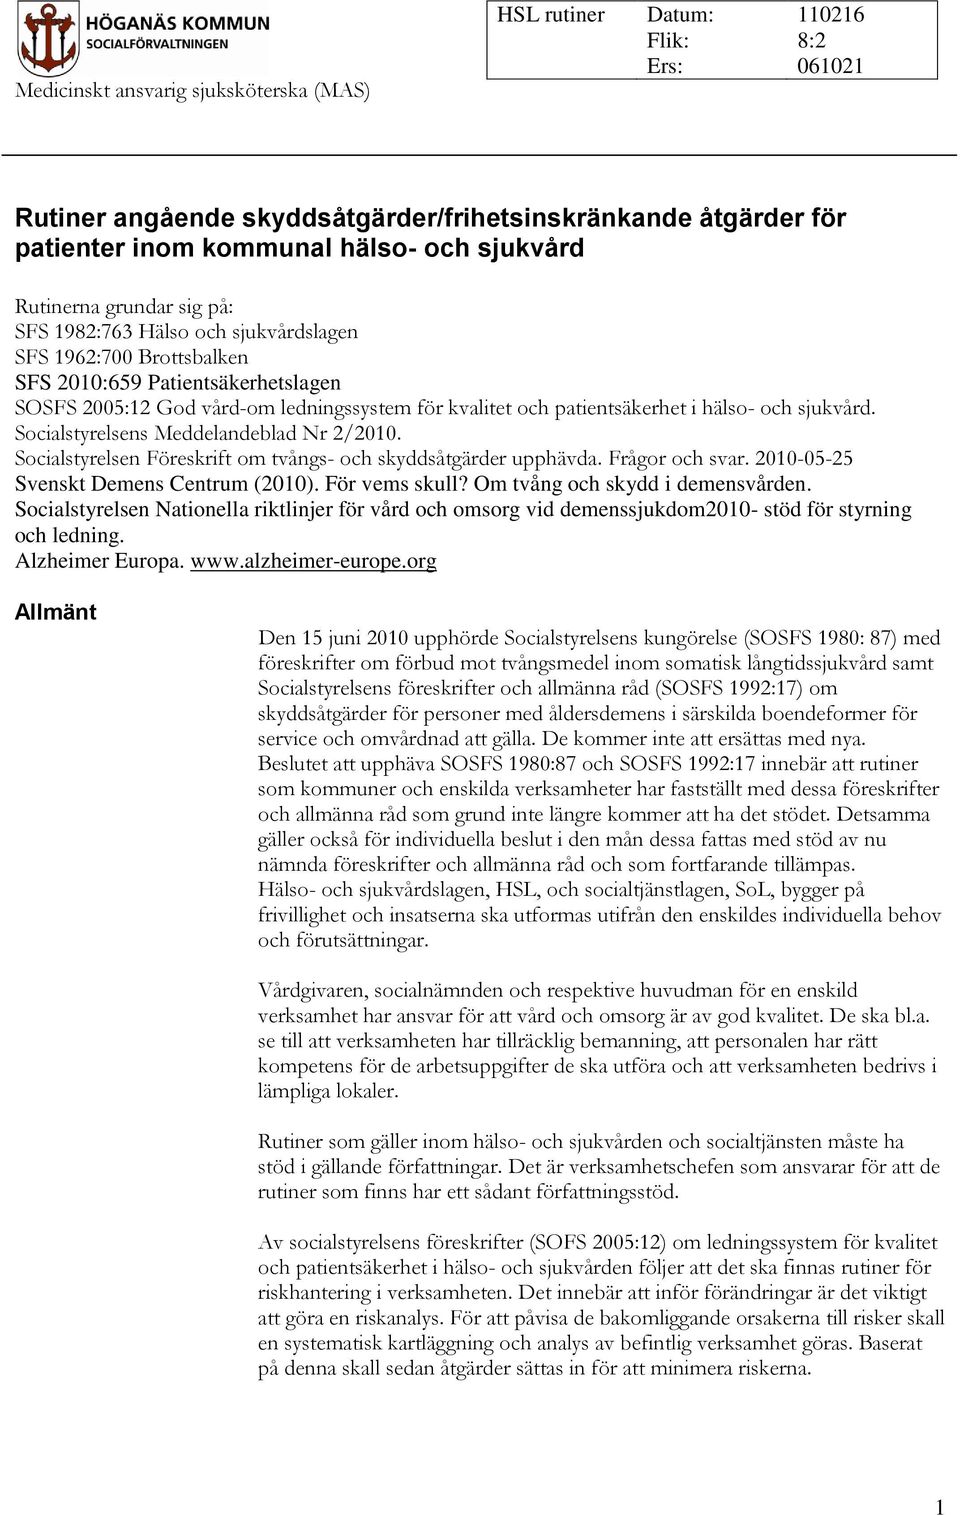 sjukvård. Socialstyrelsens Meddelandeblad Nr 2/2010. Socialstyrelsen Föreskrift om tvångs- och skyddsåtgärder upphävda. Frågor och svar. 2010-05-25 Svenskt Demens Centrum (2010). För vems skull?